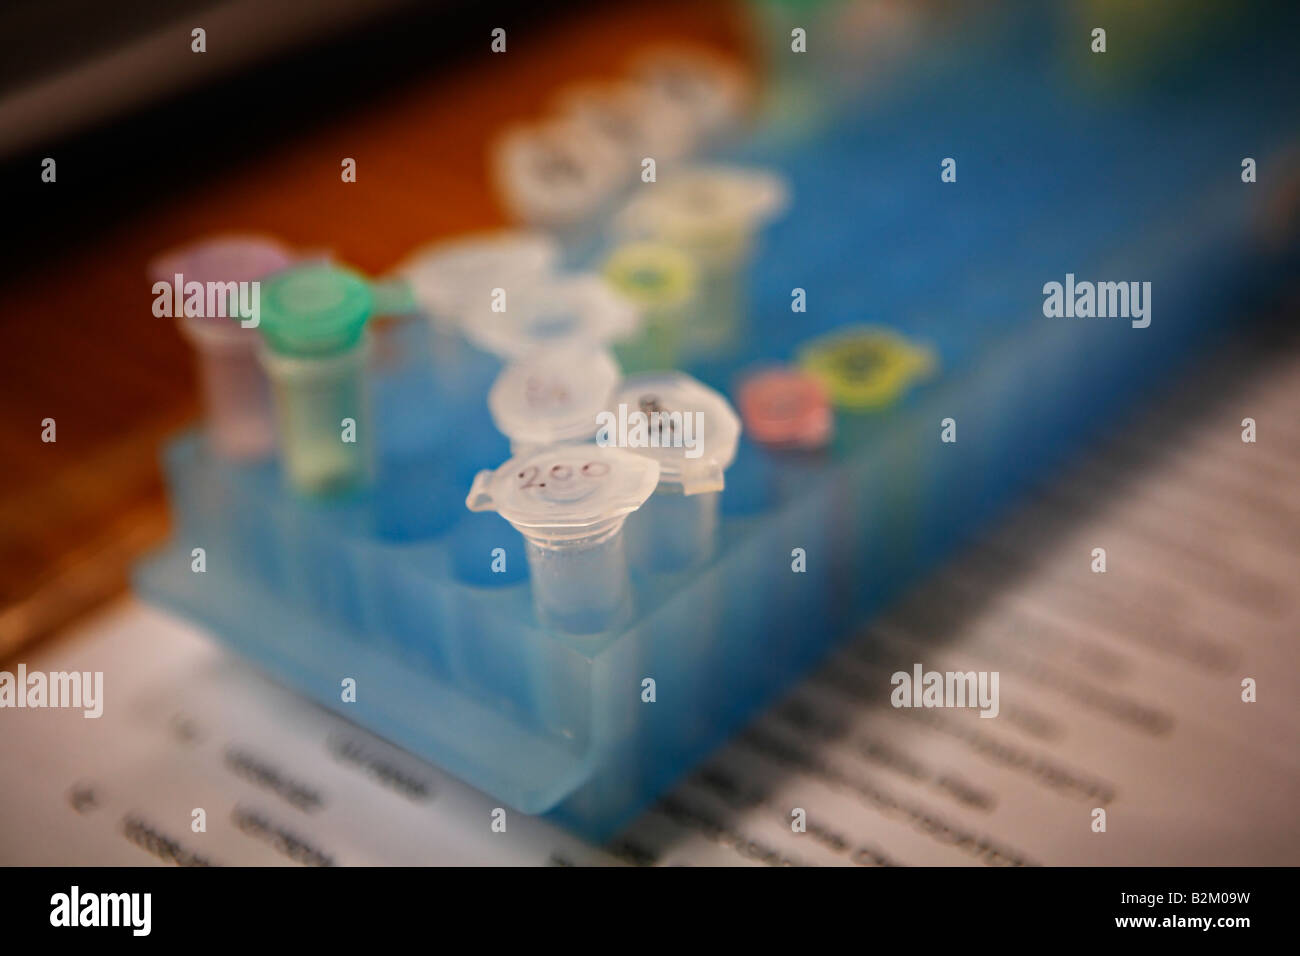 L'équipement de laboratoire pour l'analyse d'ADN des échantillons sont contenues dans de petites fioles à bouchon en plastique stockés dans des casiers en plastique Banque D'Images